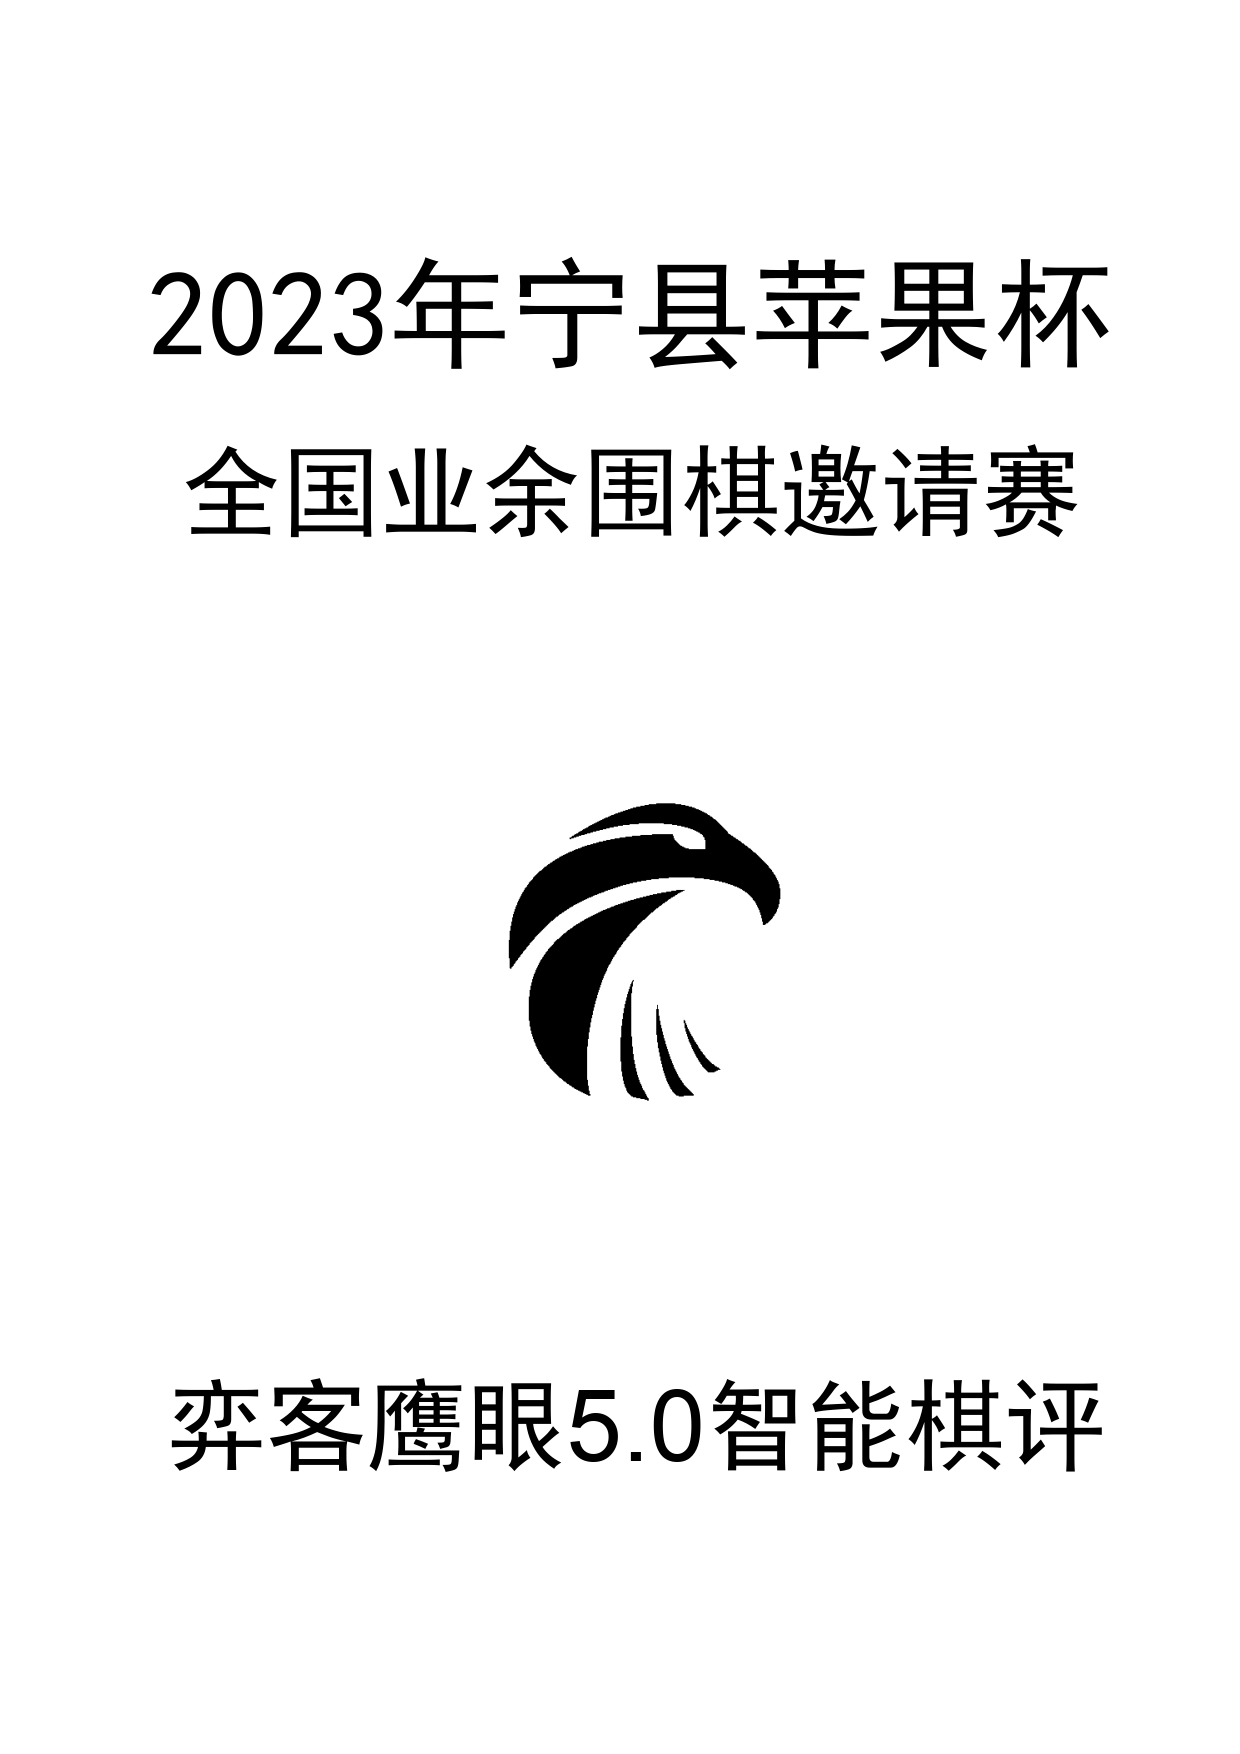 “宁县苹果杯”2023年全国业余围棋邀请赛0_1.png